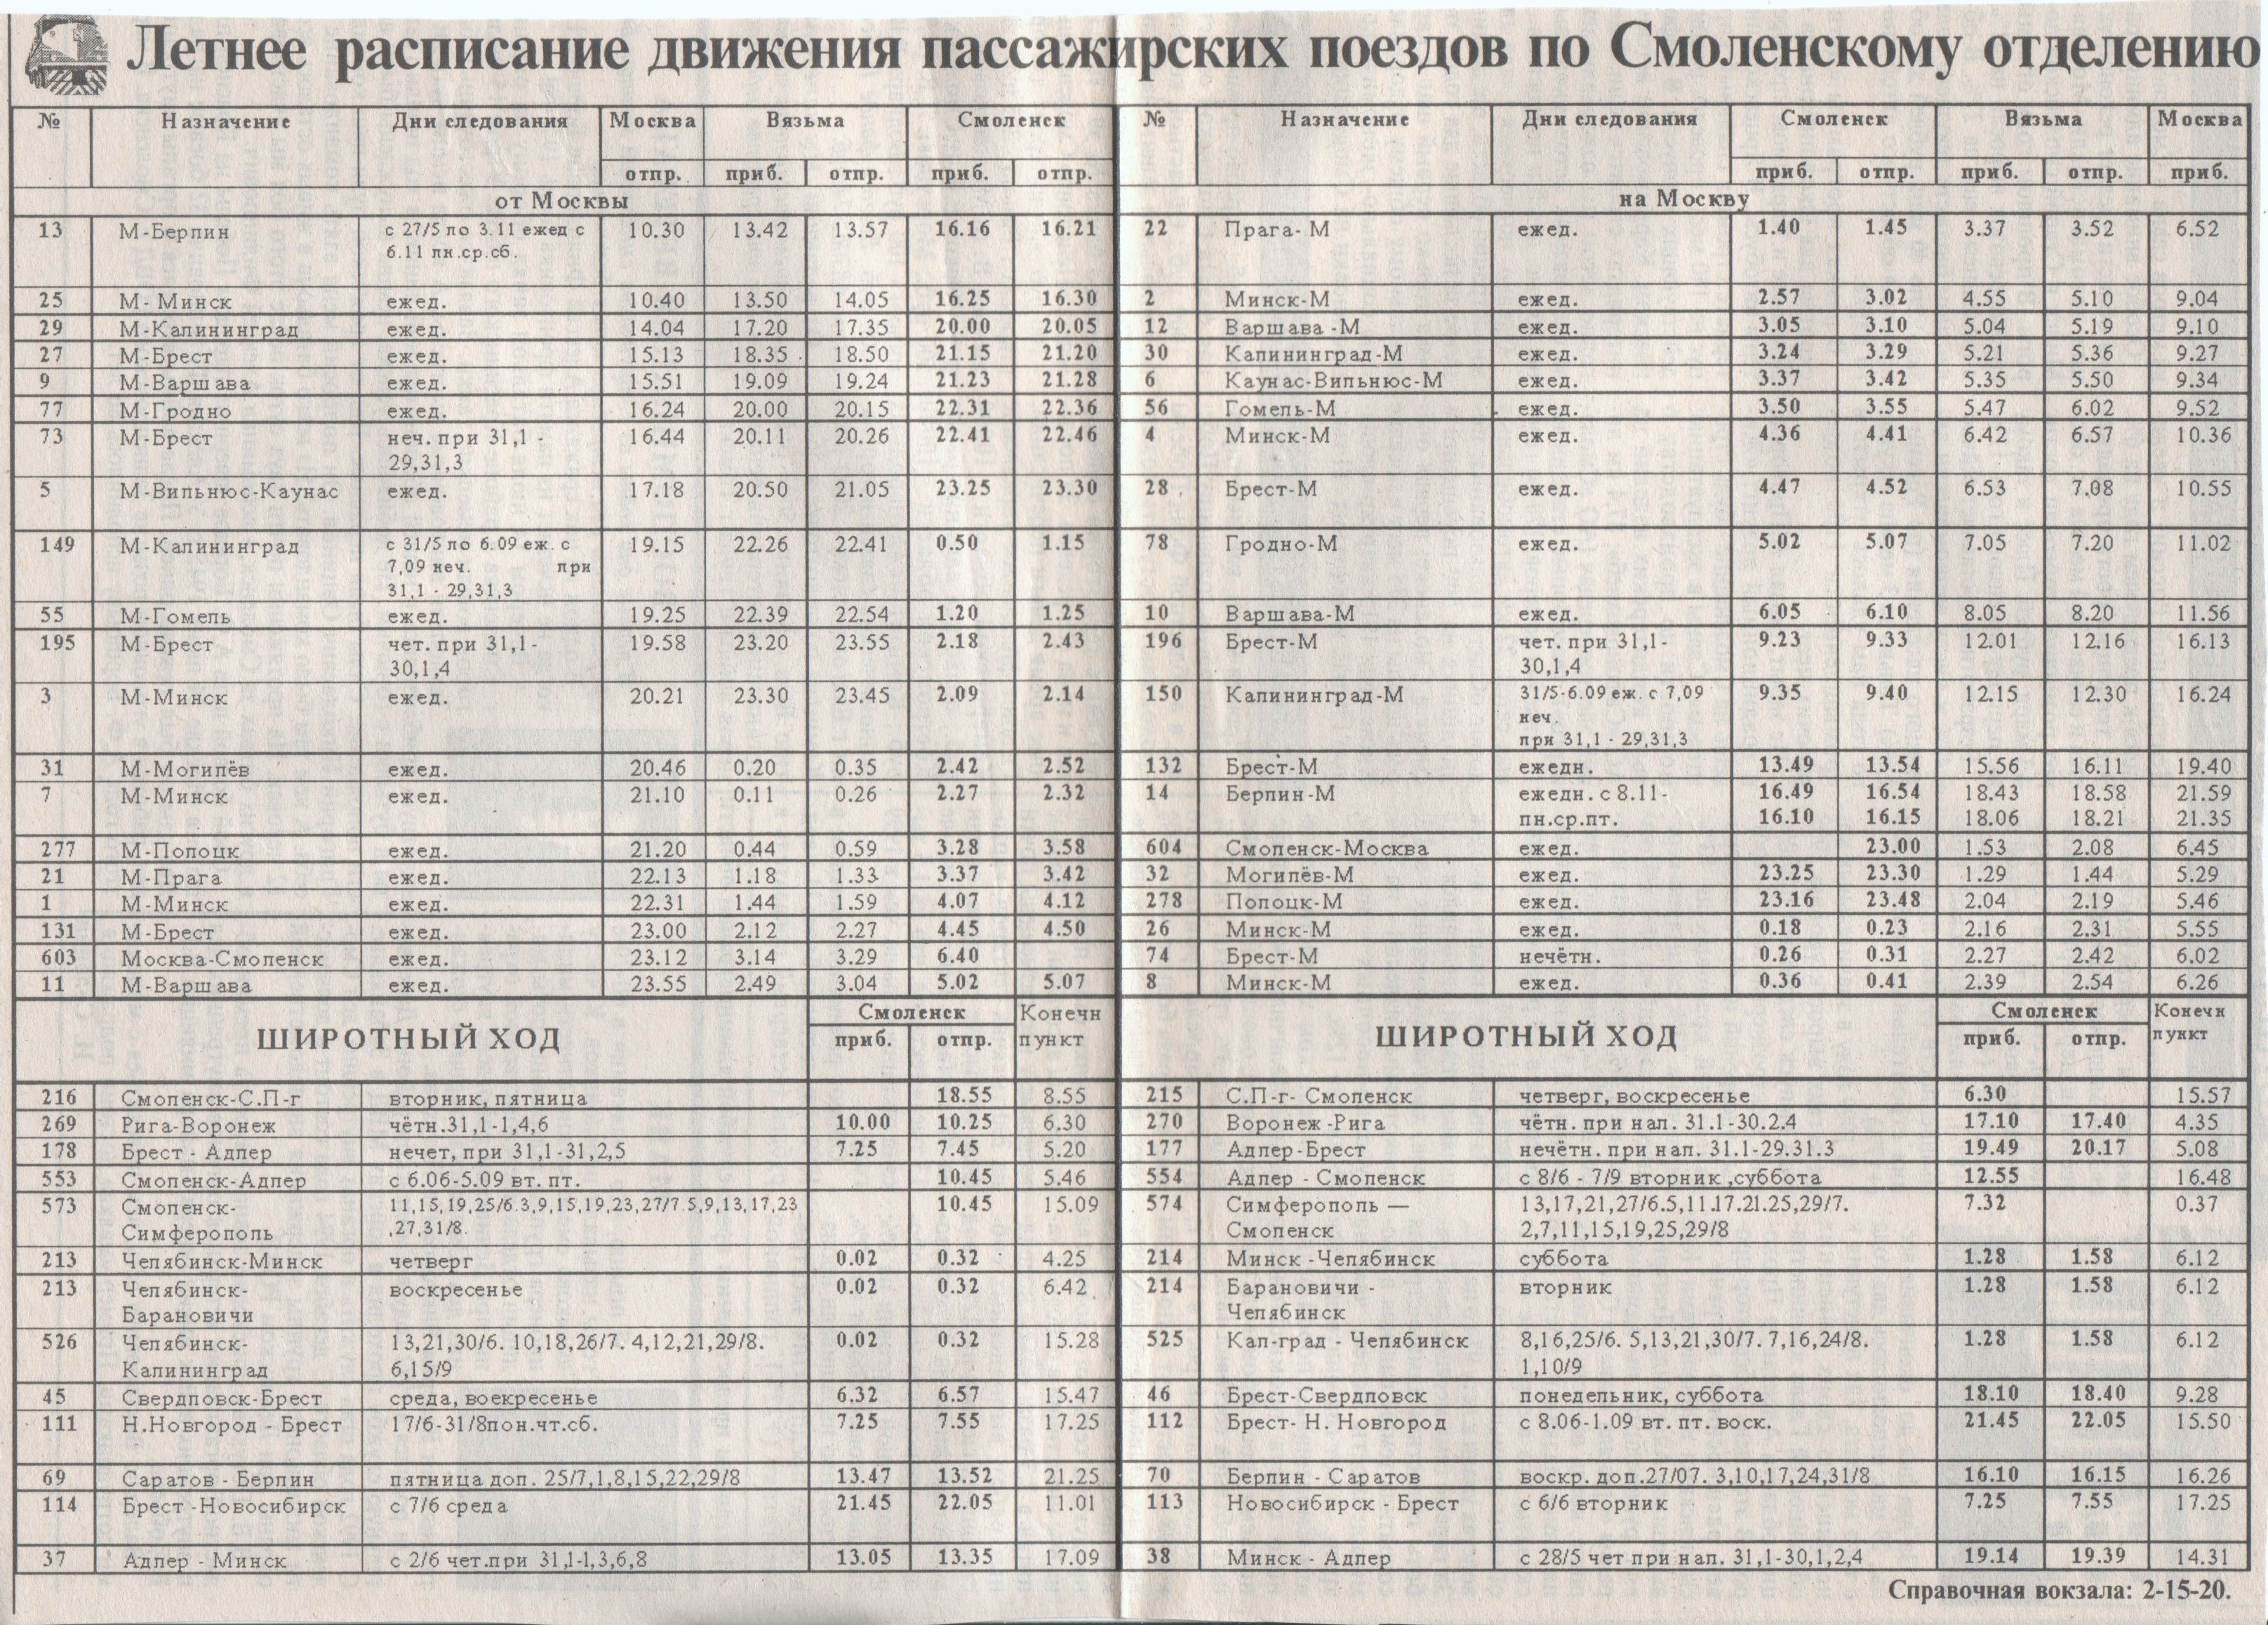 Гагарин смоленск расписание